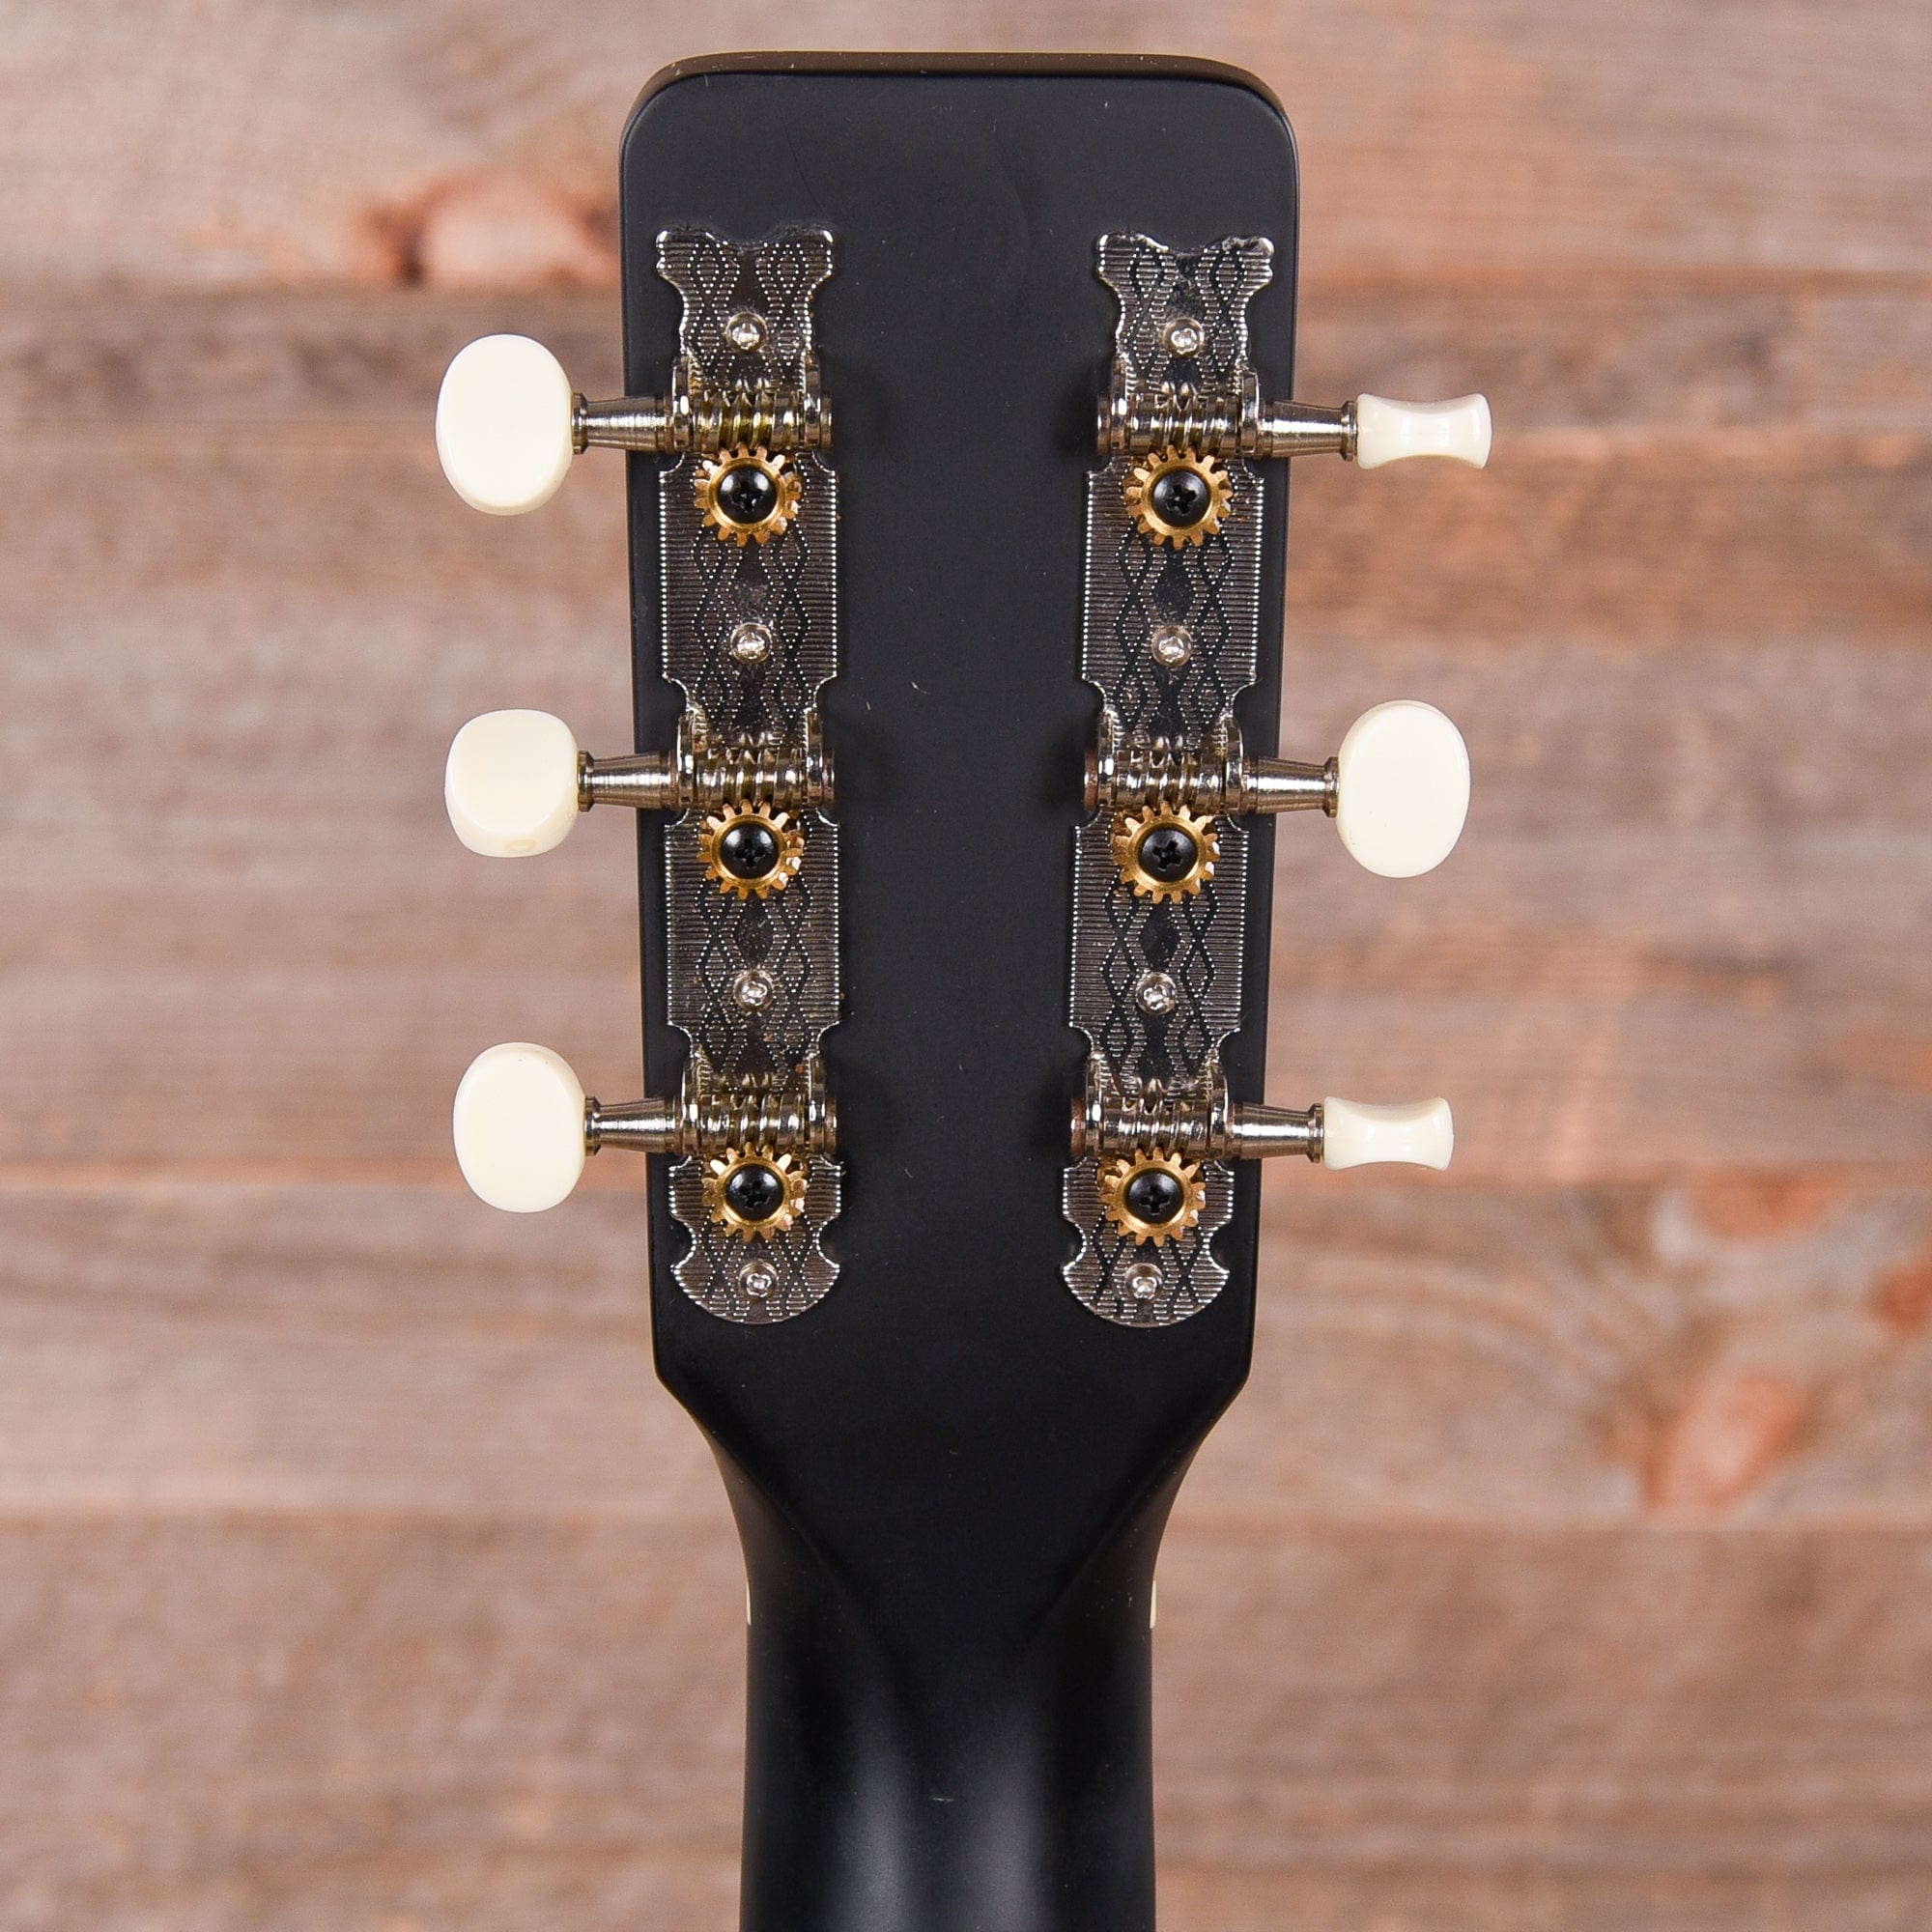 Gretsch Jim Dandy Flat Top Acoustic 2 Tone Sunburst Acoustic Guitars / Parlor